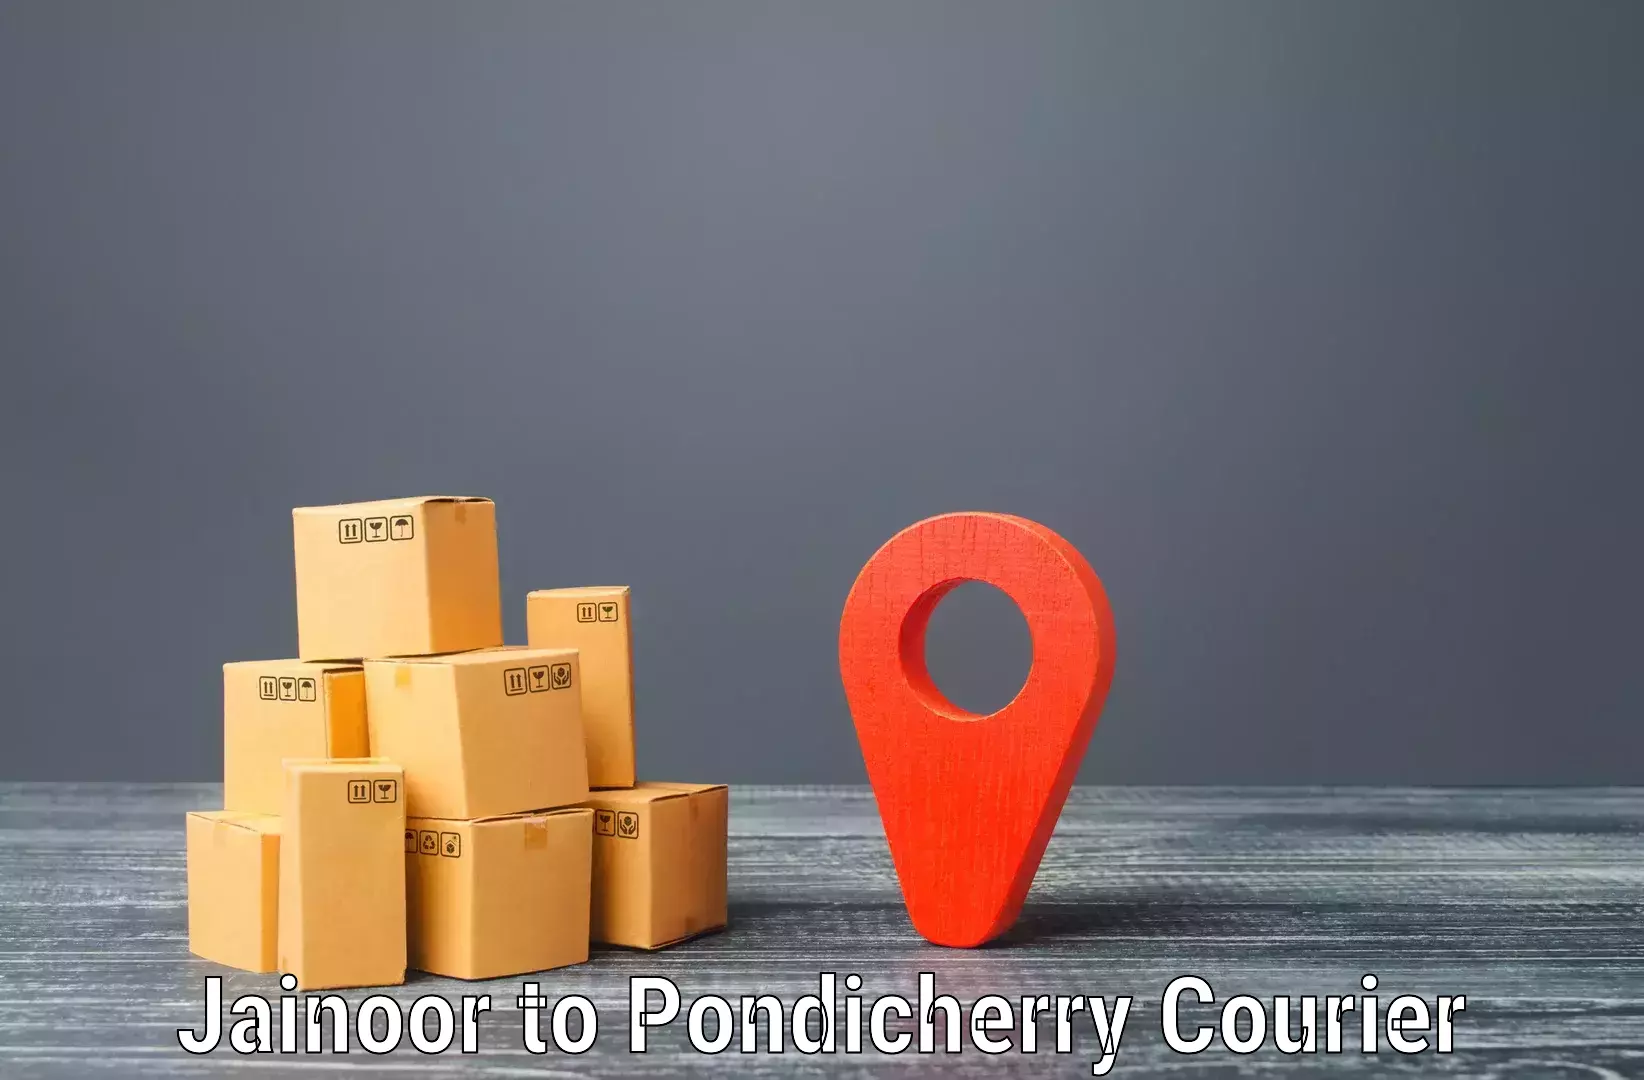 Flexible delivery schedules Jainoor to Pondicherry